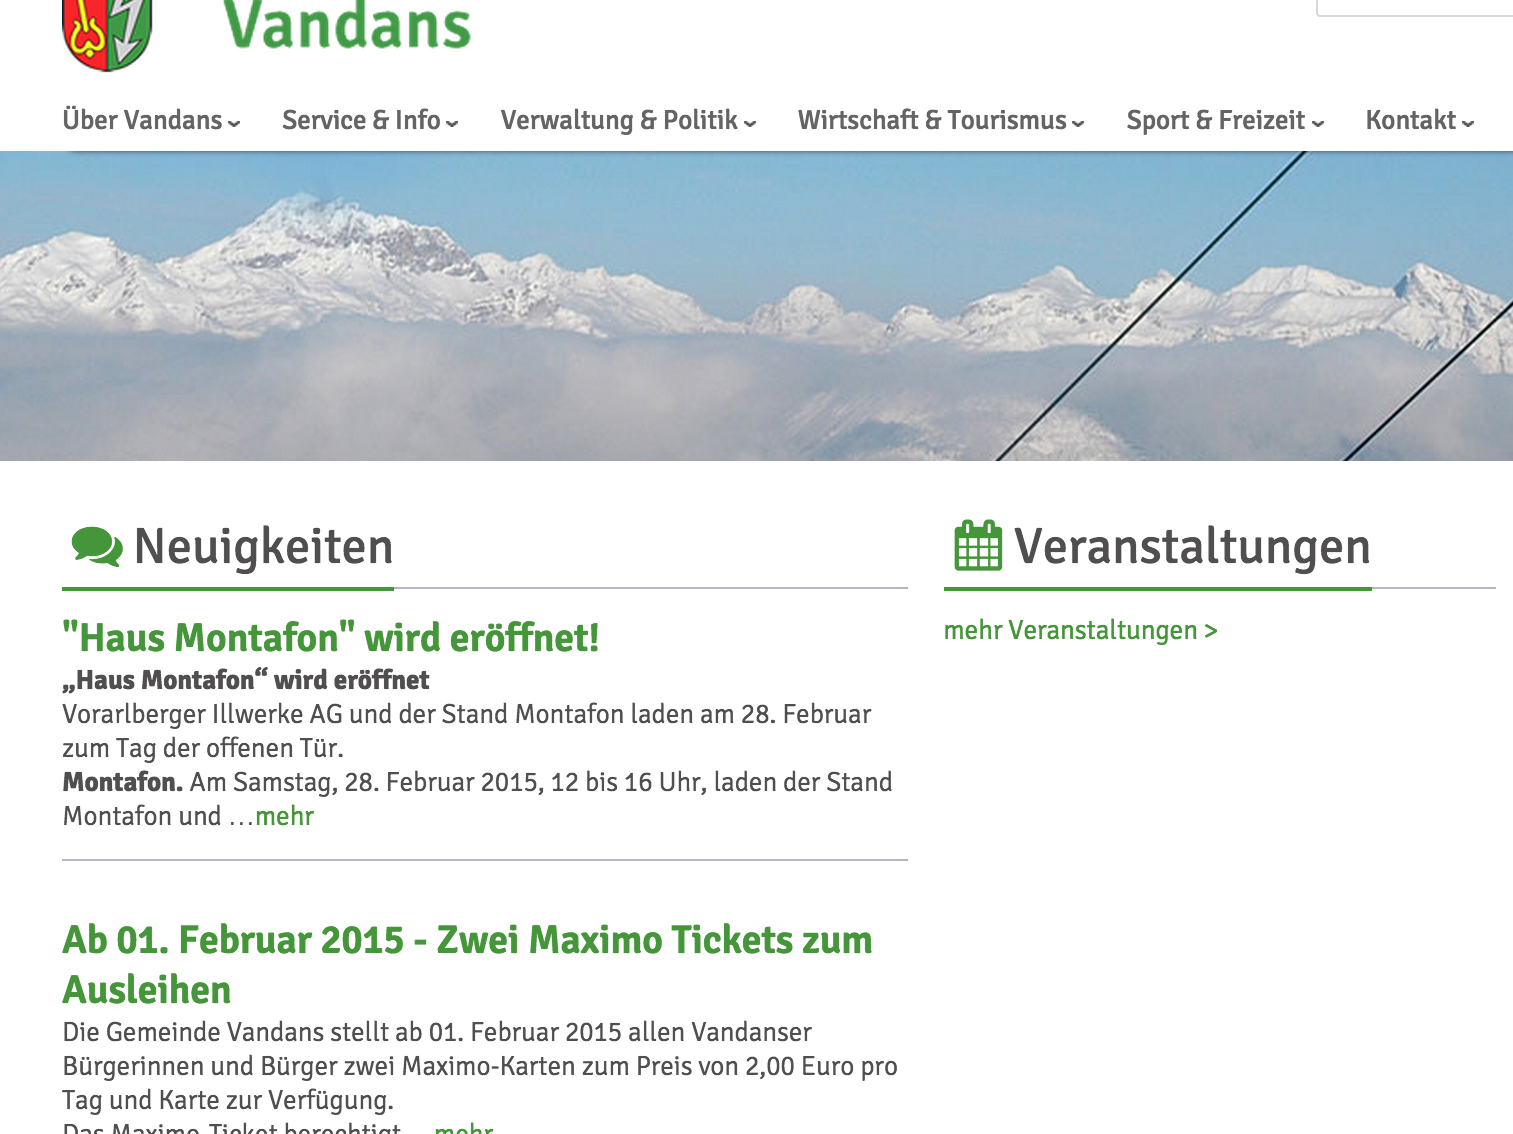 Die neue Homepage der Gemeinde Vandans ist sehr informativ und optisch ein echter